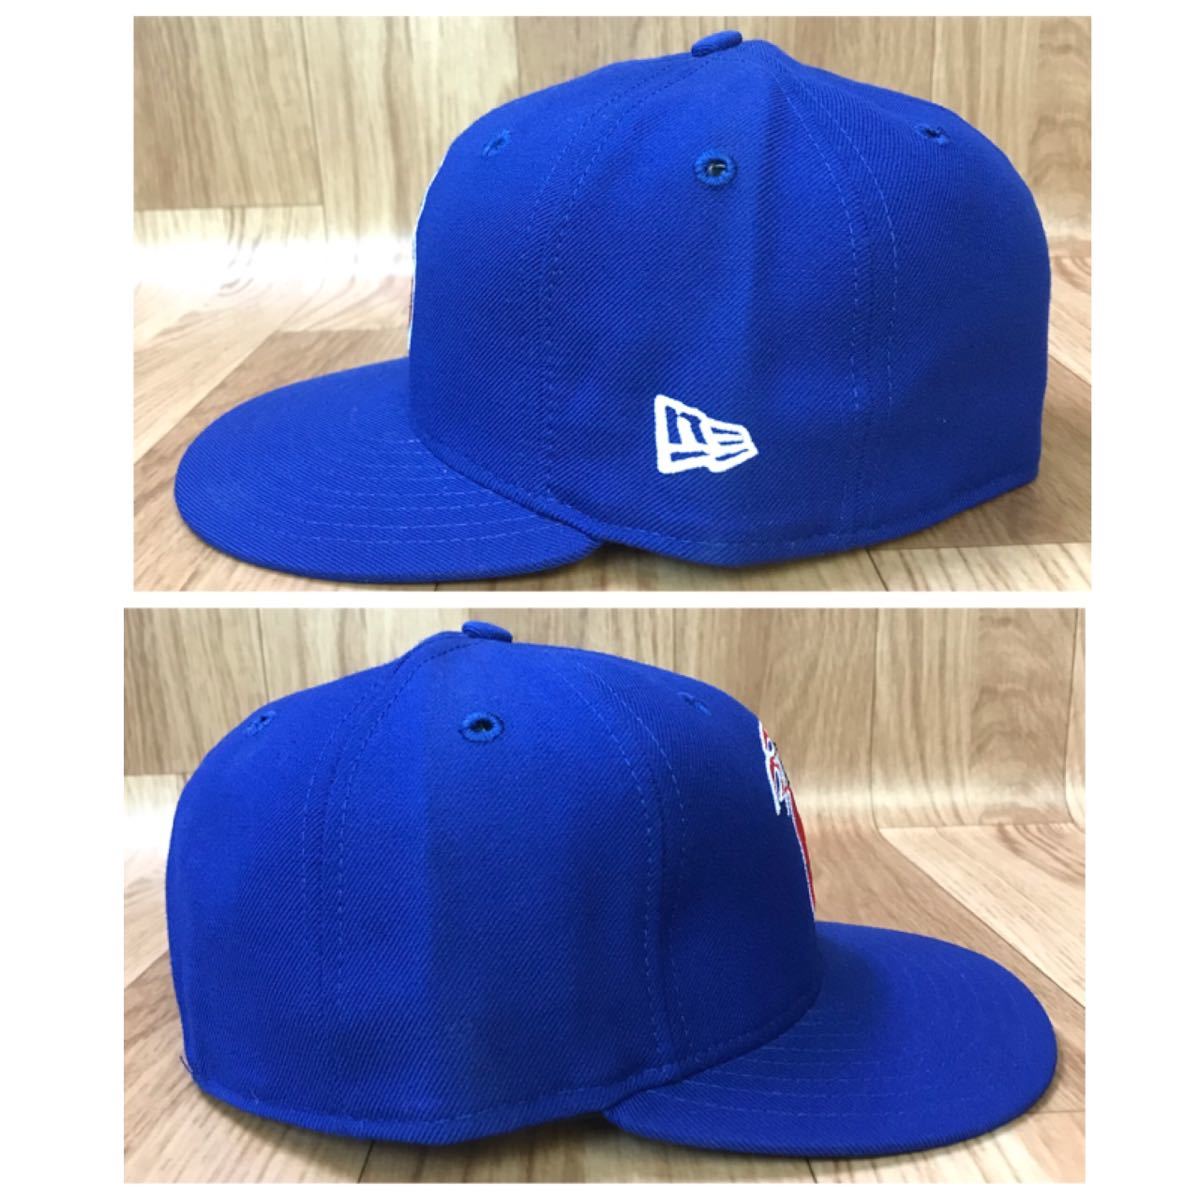 ●送料無料/良品/NEW ERA ニューエラ 59FIFTY NBA デトロイト ピストンズ キャップ ブルー系 7 3/8 58.7cm/バスケット キャップ 帽子